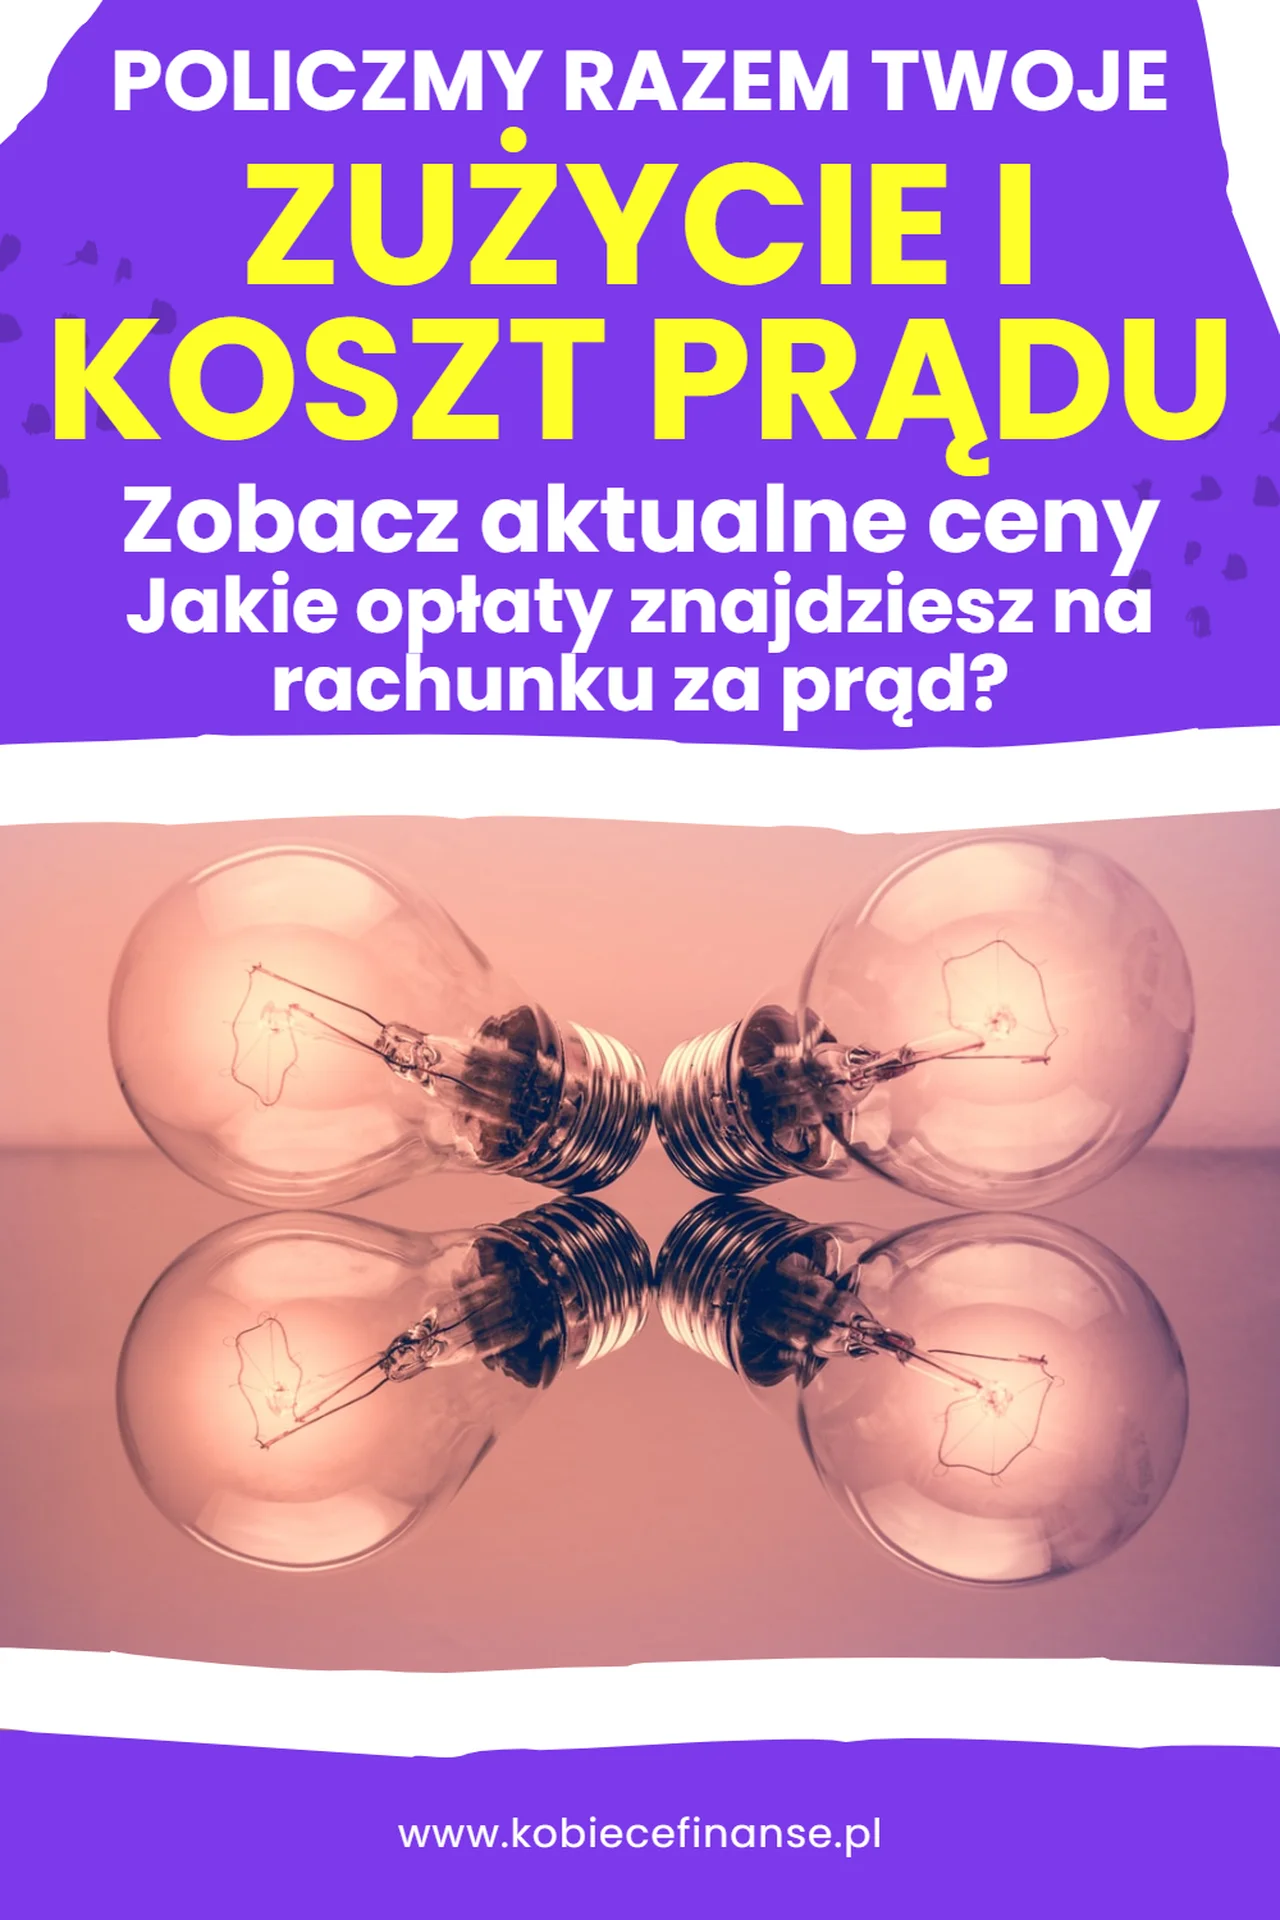 Ceny prądu w Polsce - ile kosztuje 1 kWh energii elektrycznej? | Kalkulator